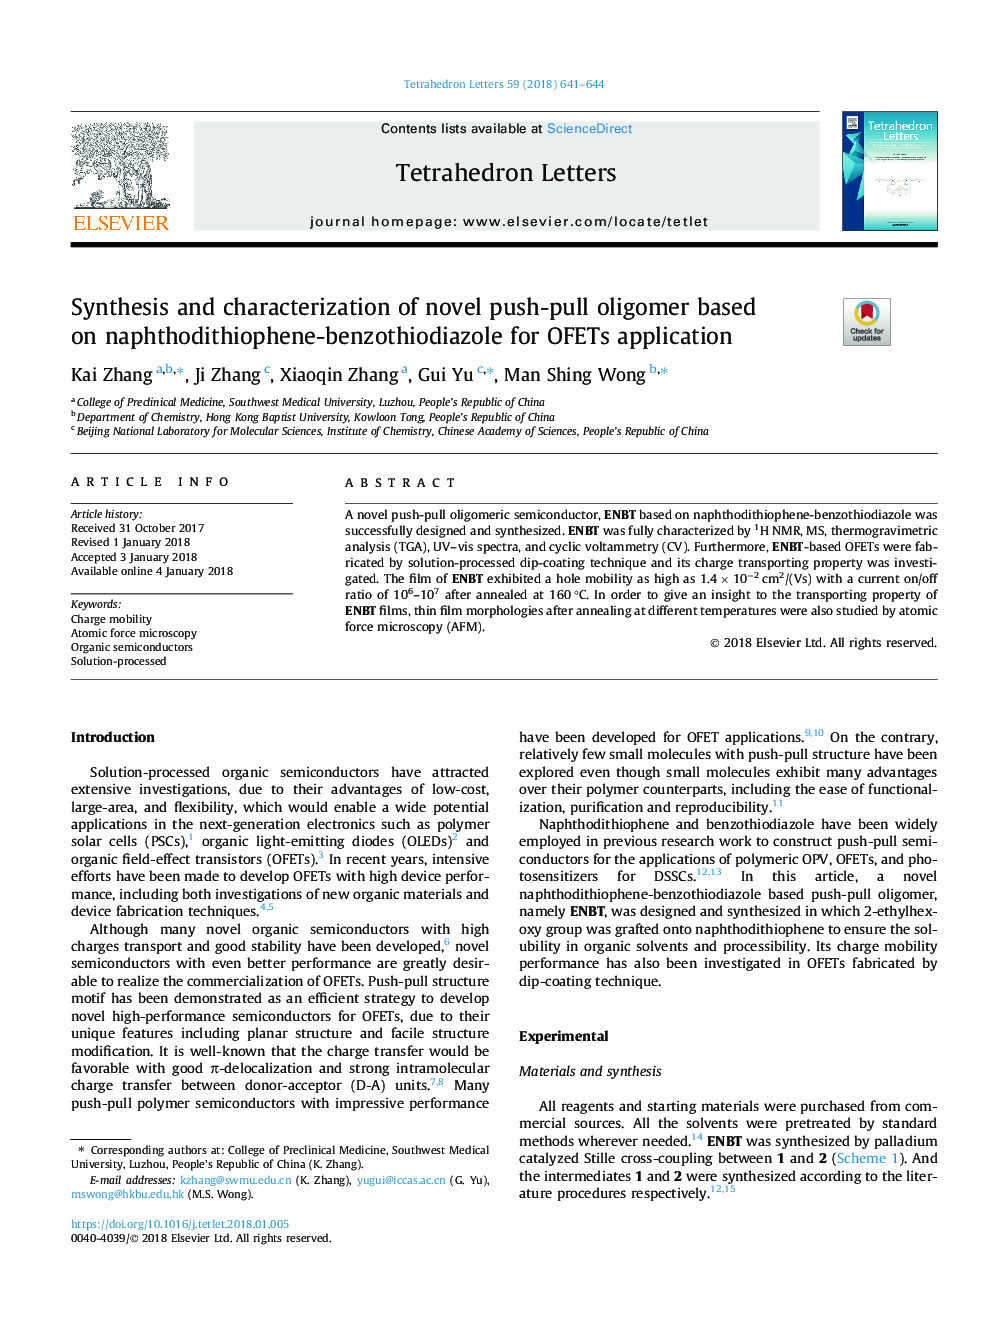 Synthesis and characterization of novel push-pull oligomer based on naphthodithiophene-benzothiodiazole for OFETs application